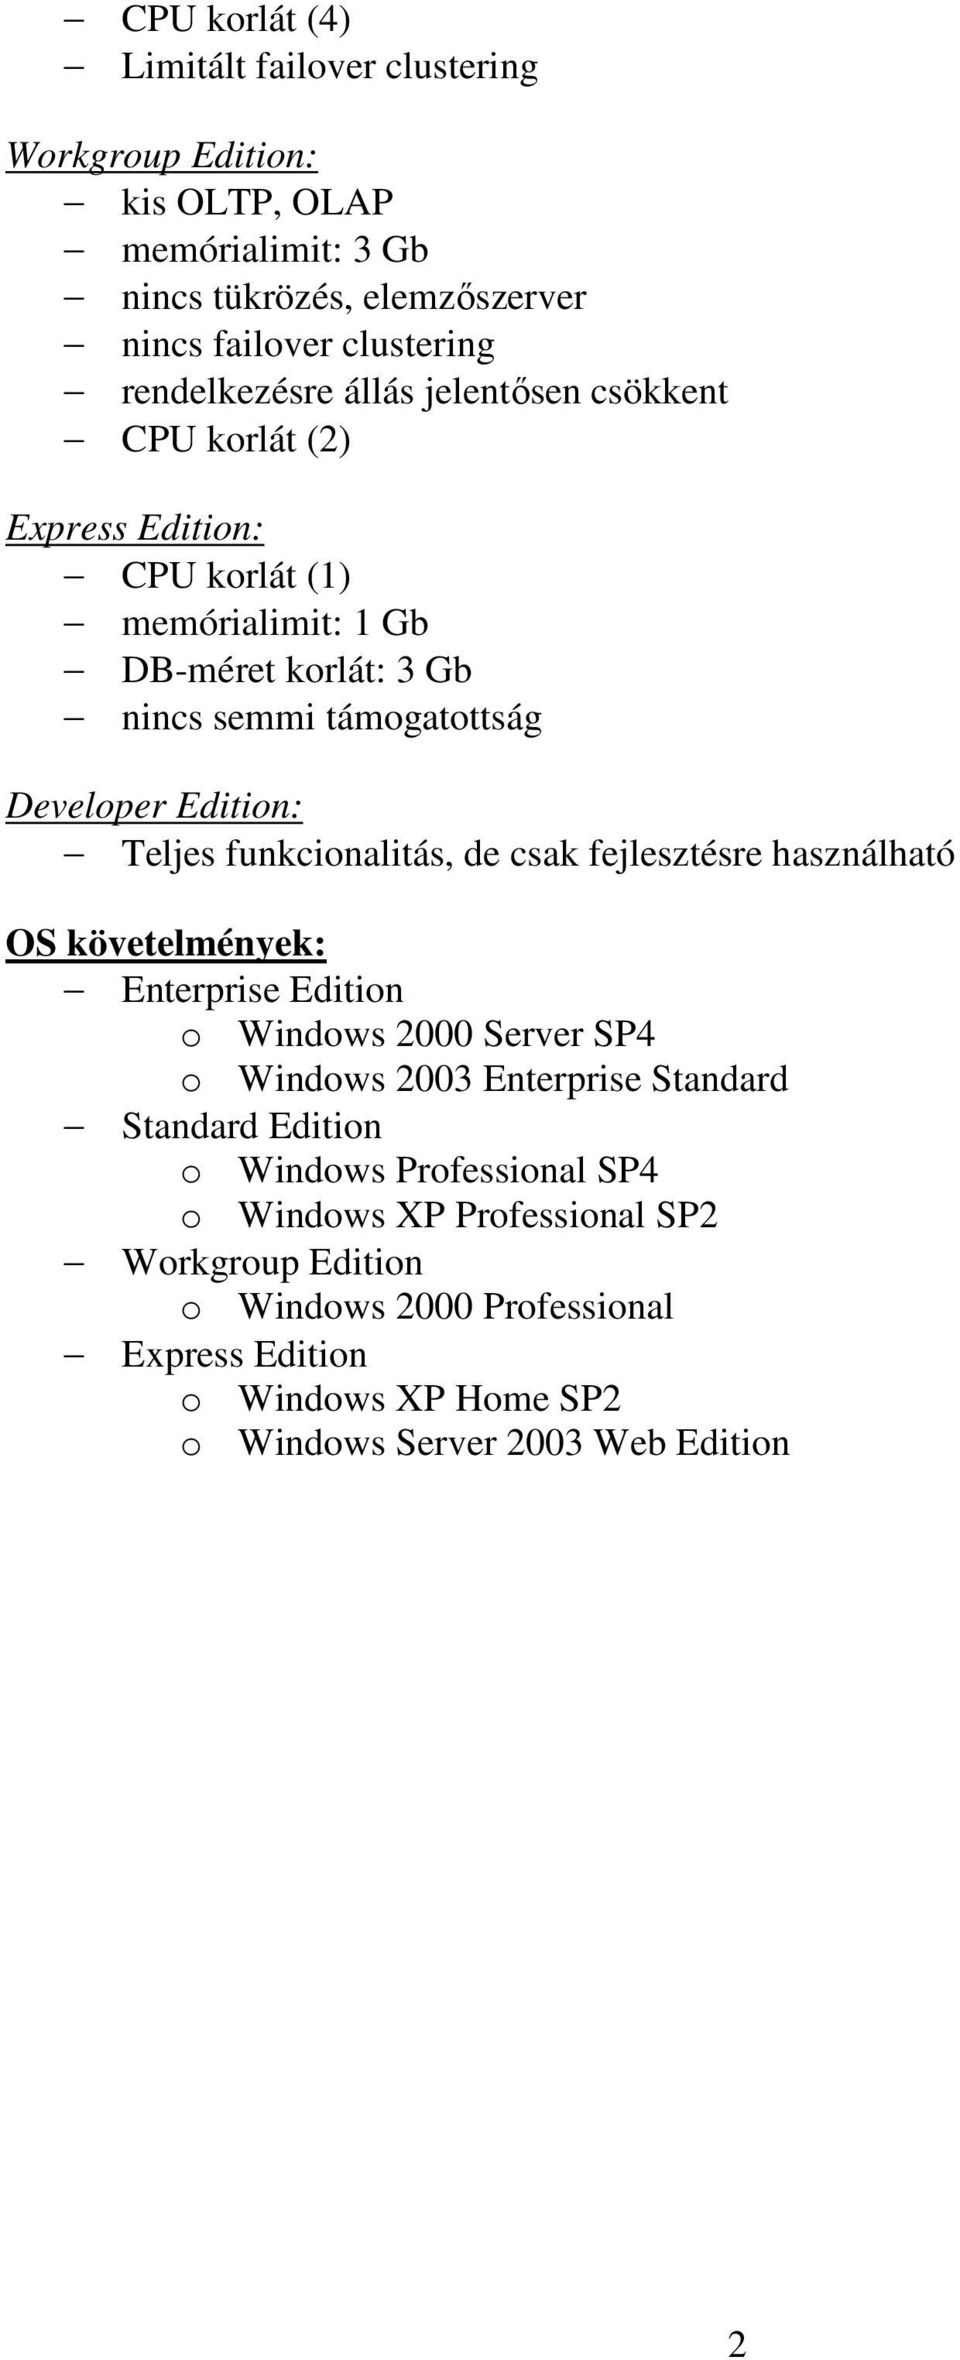 funkcionalitás, de csak fejlesztésre használható OS követelmények: Enterprise Edition o Windows 2000 Server SP4 o Windows 2003 Enterprise Standard Standard Edition o